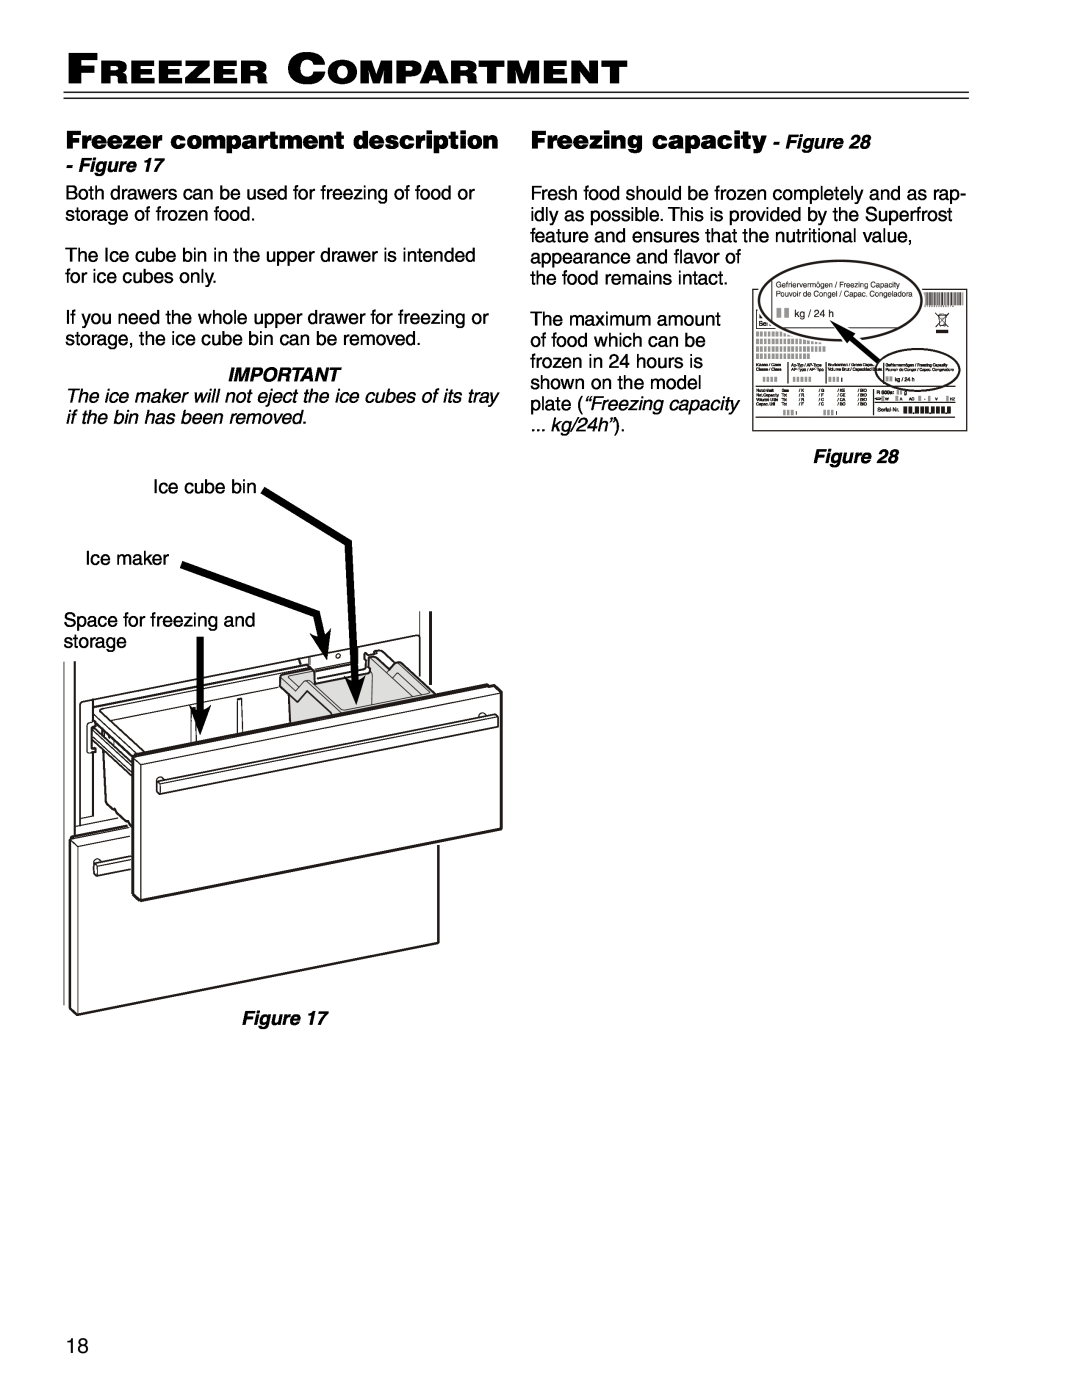 Liebherr HC 7081411-00 manual Freezer Compartment, Freezer compartment description, Freezing capacity - Figure, kg/24h” 